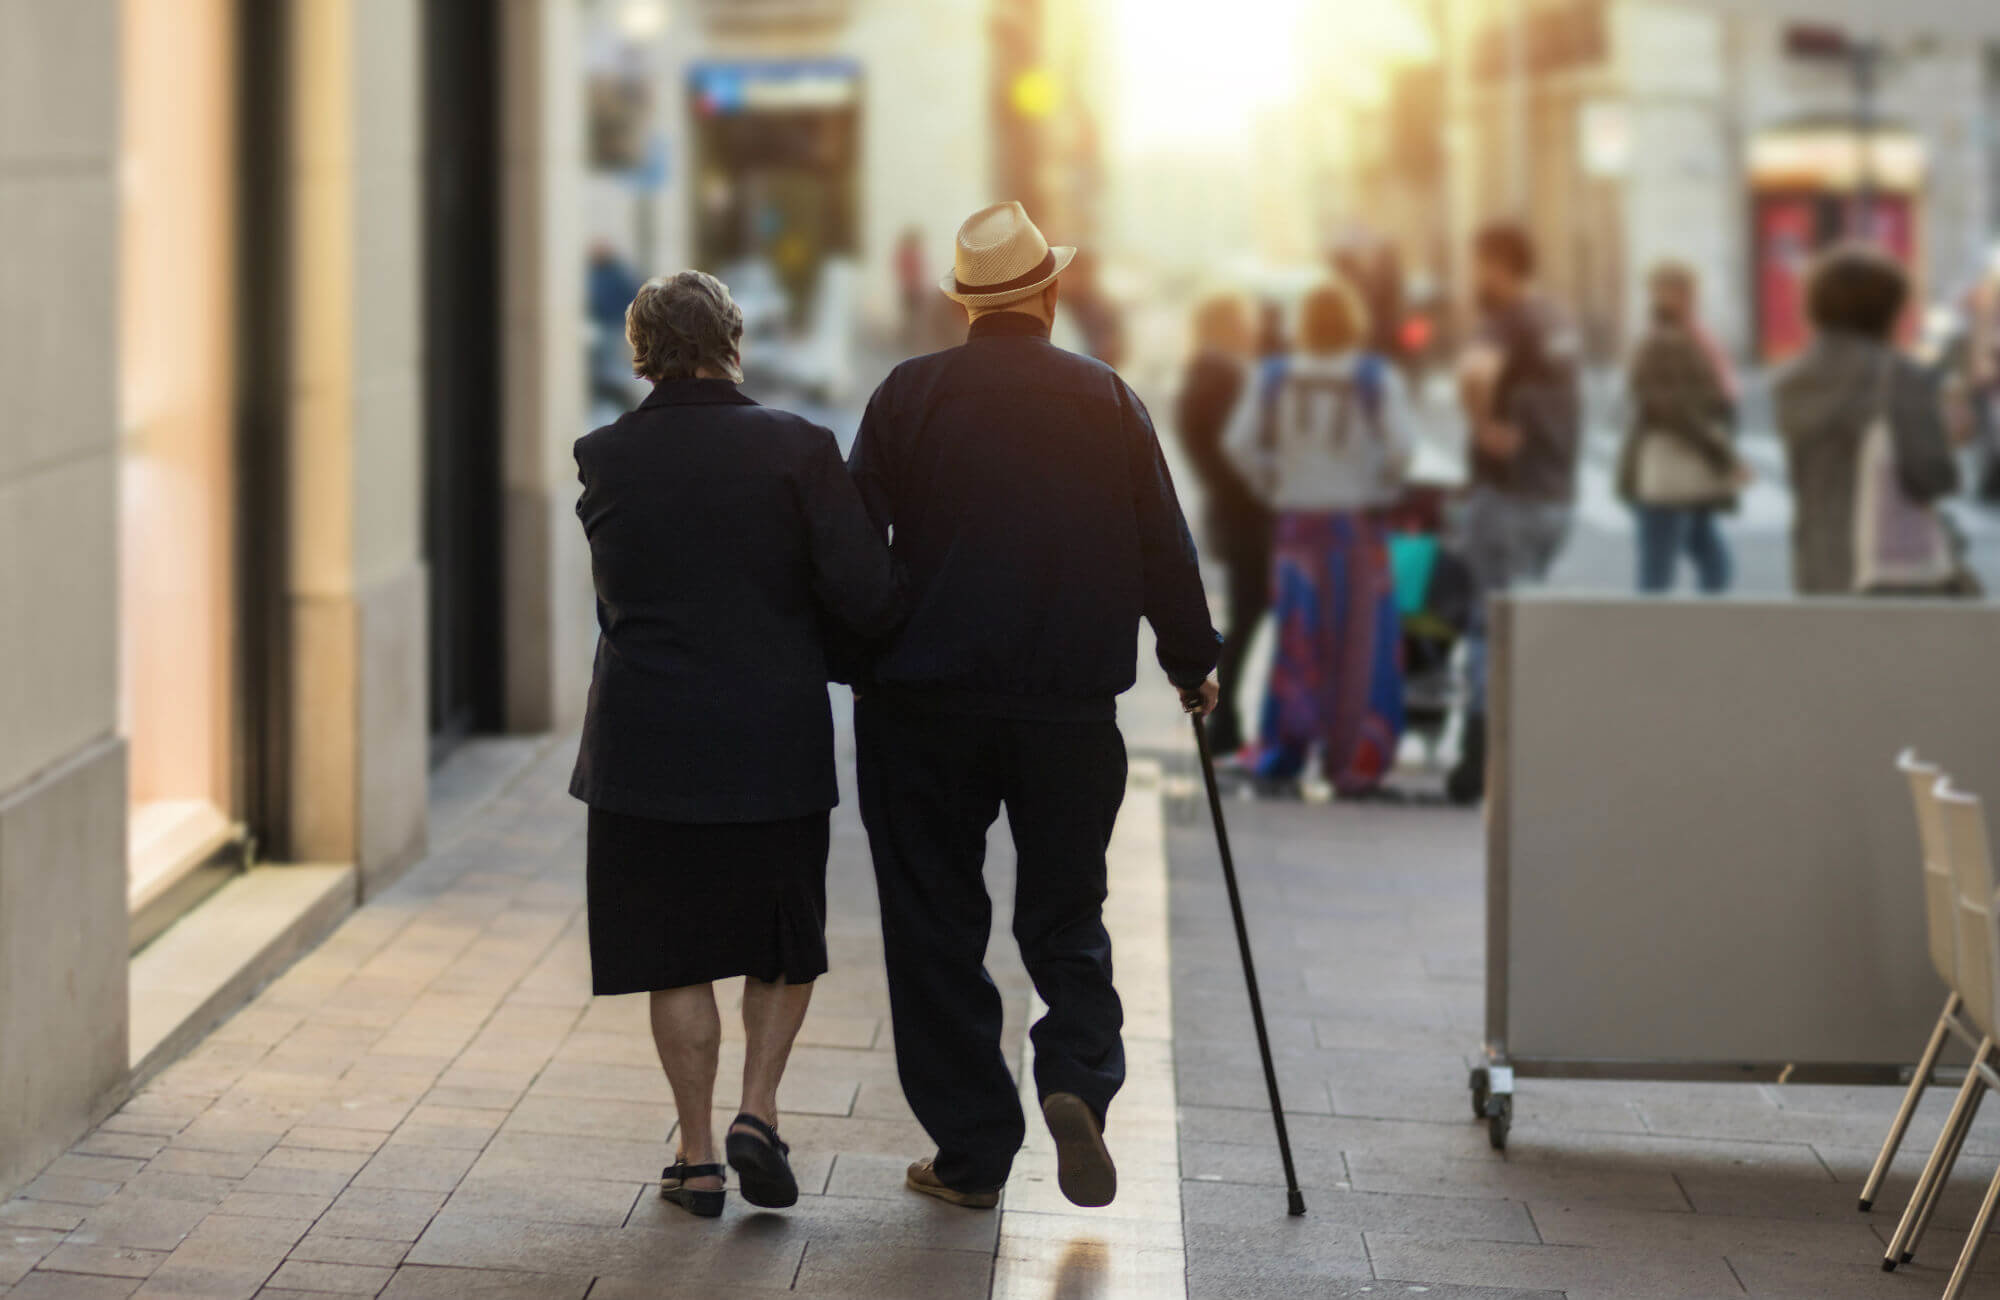 An older couple walking down a city sidewalk